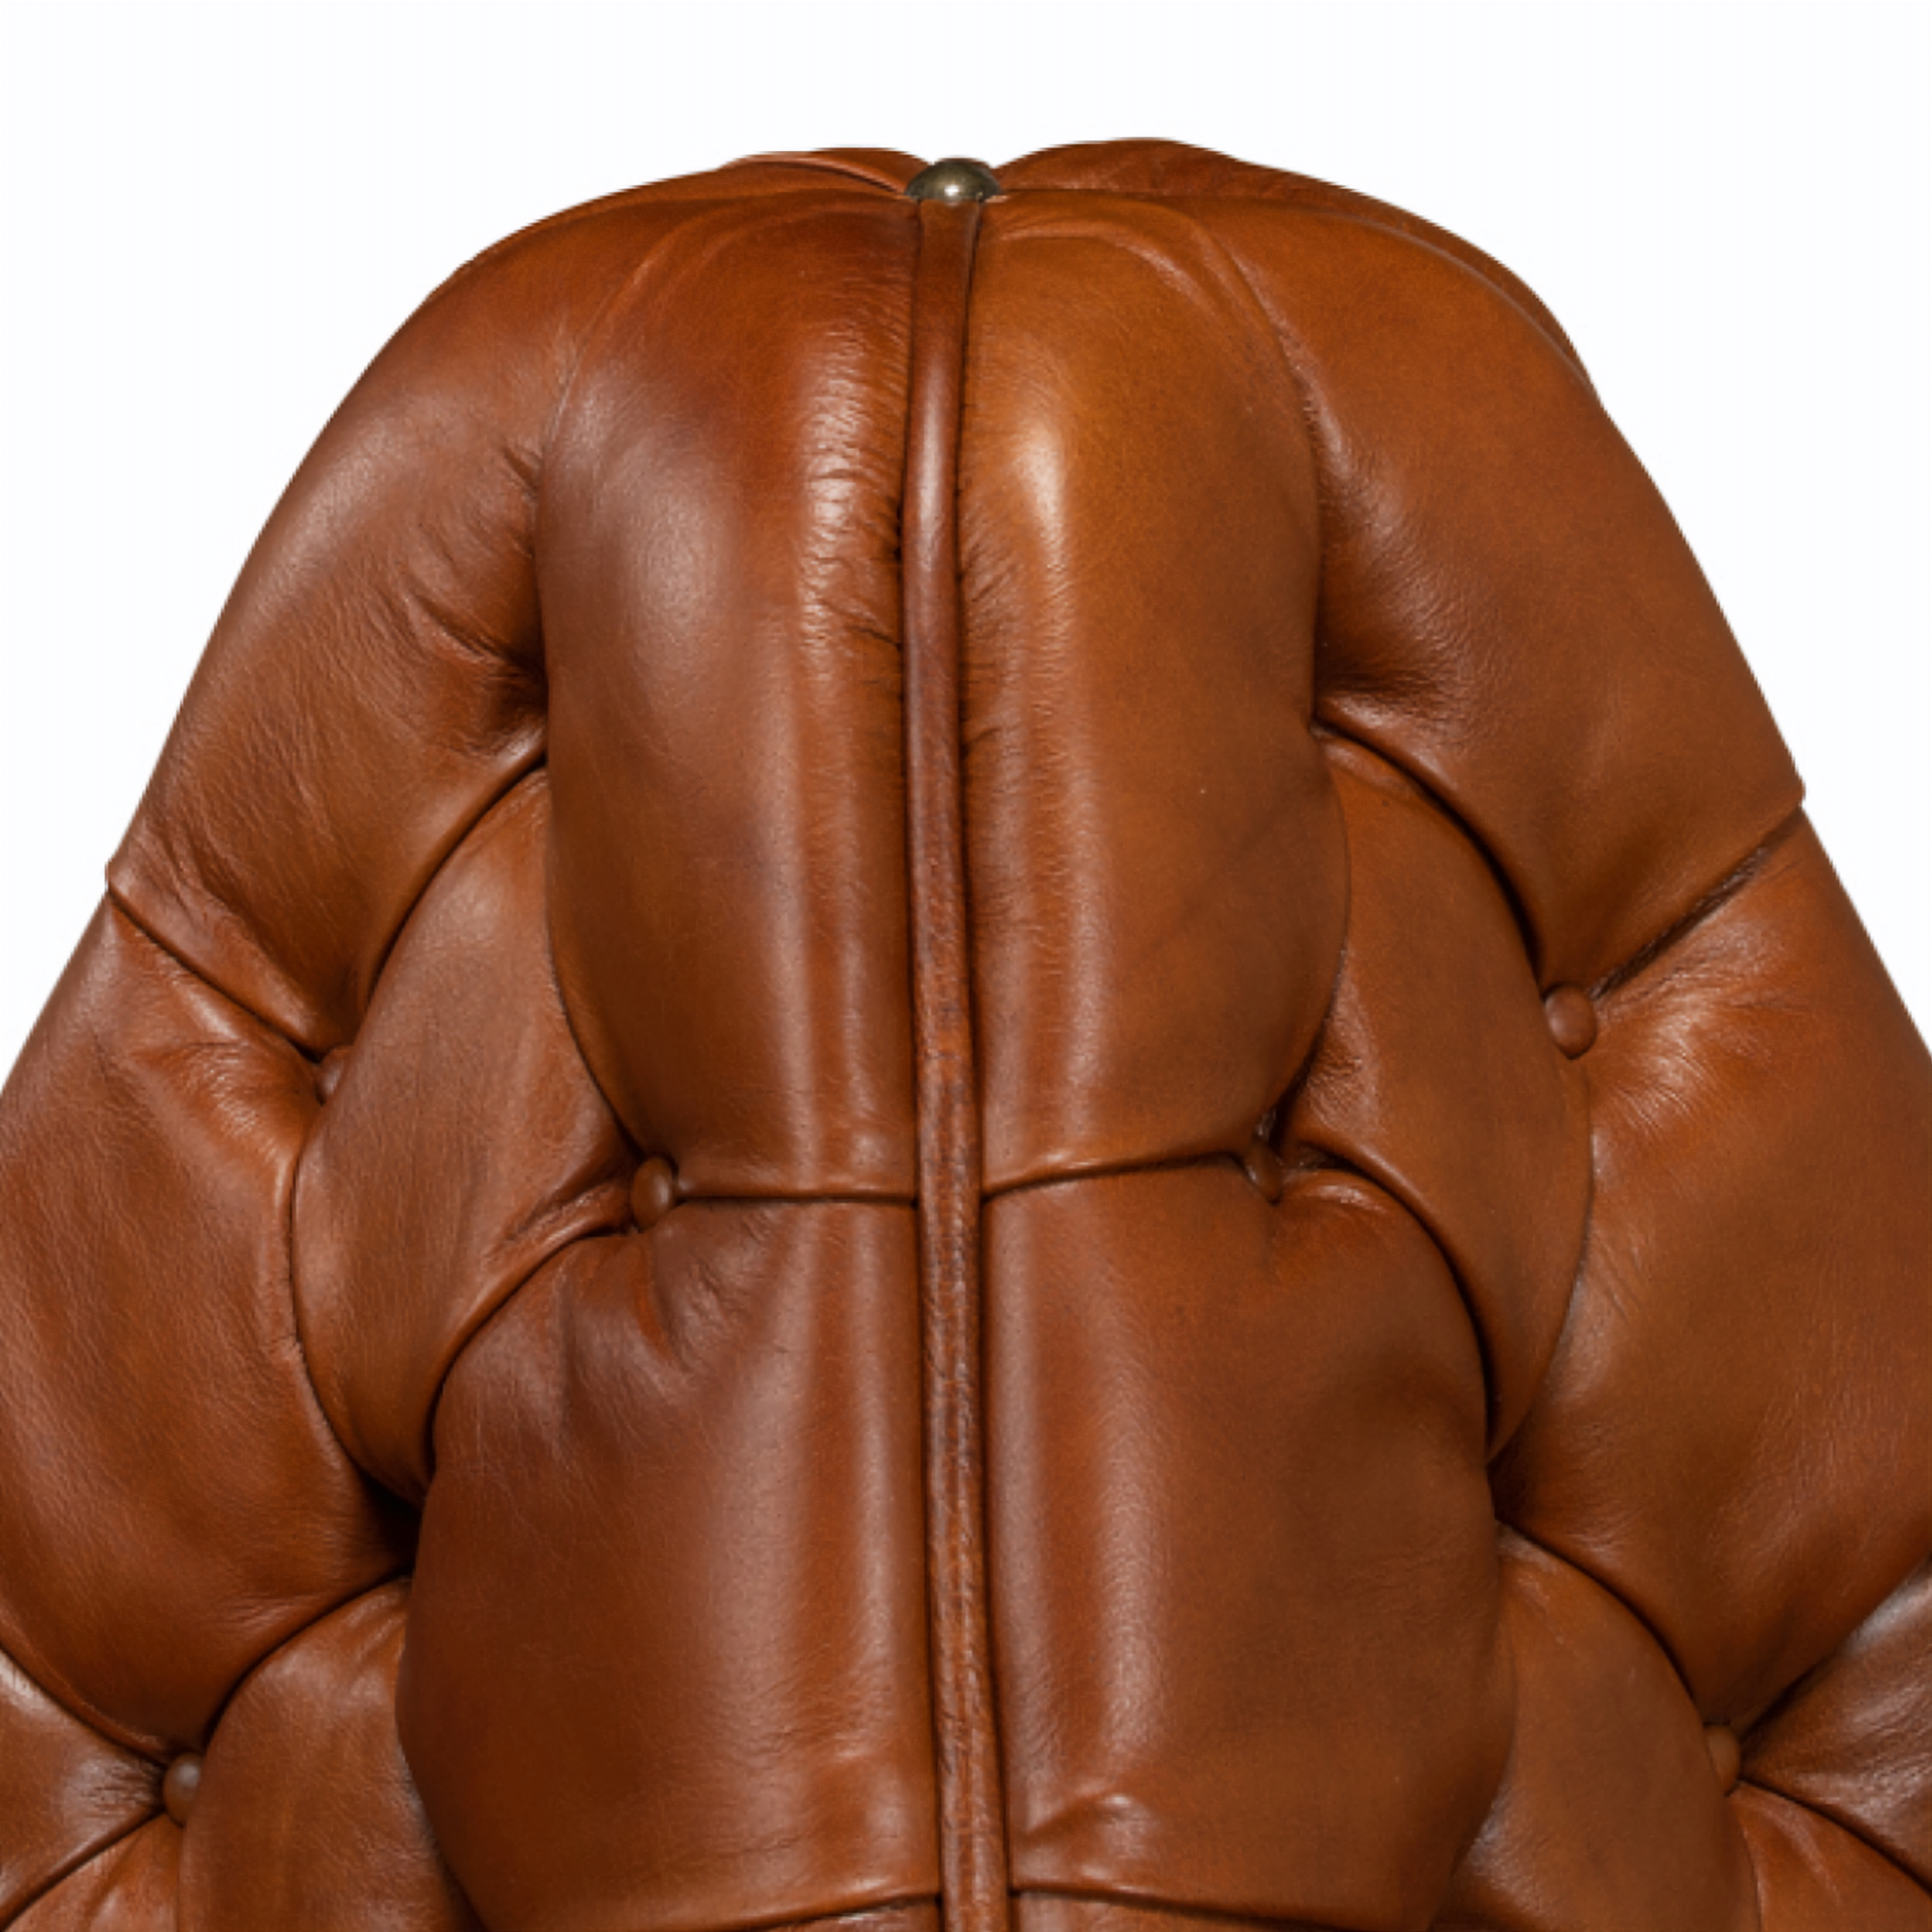 Tufted Leather Lobby Sofa